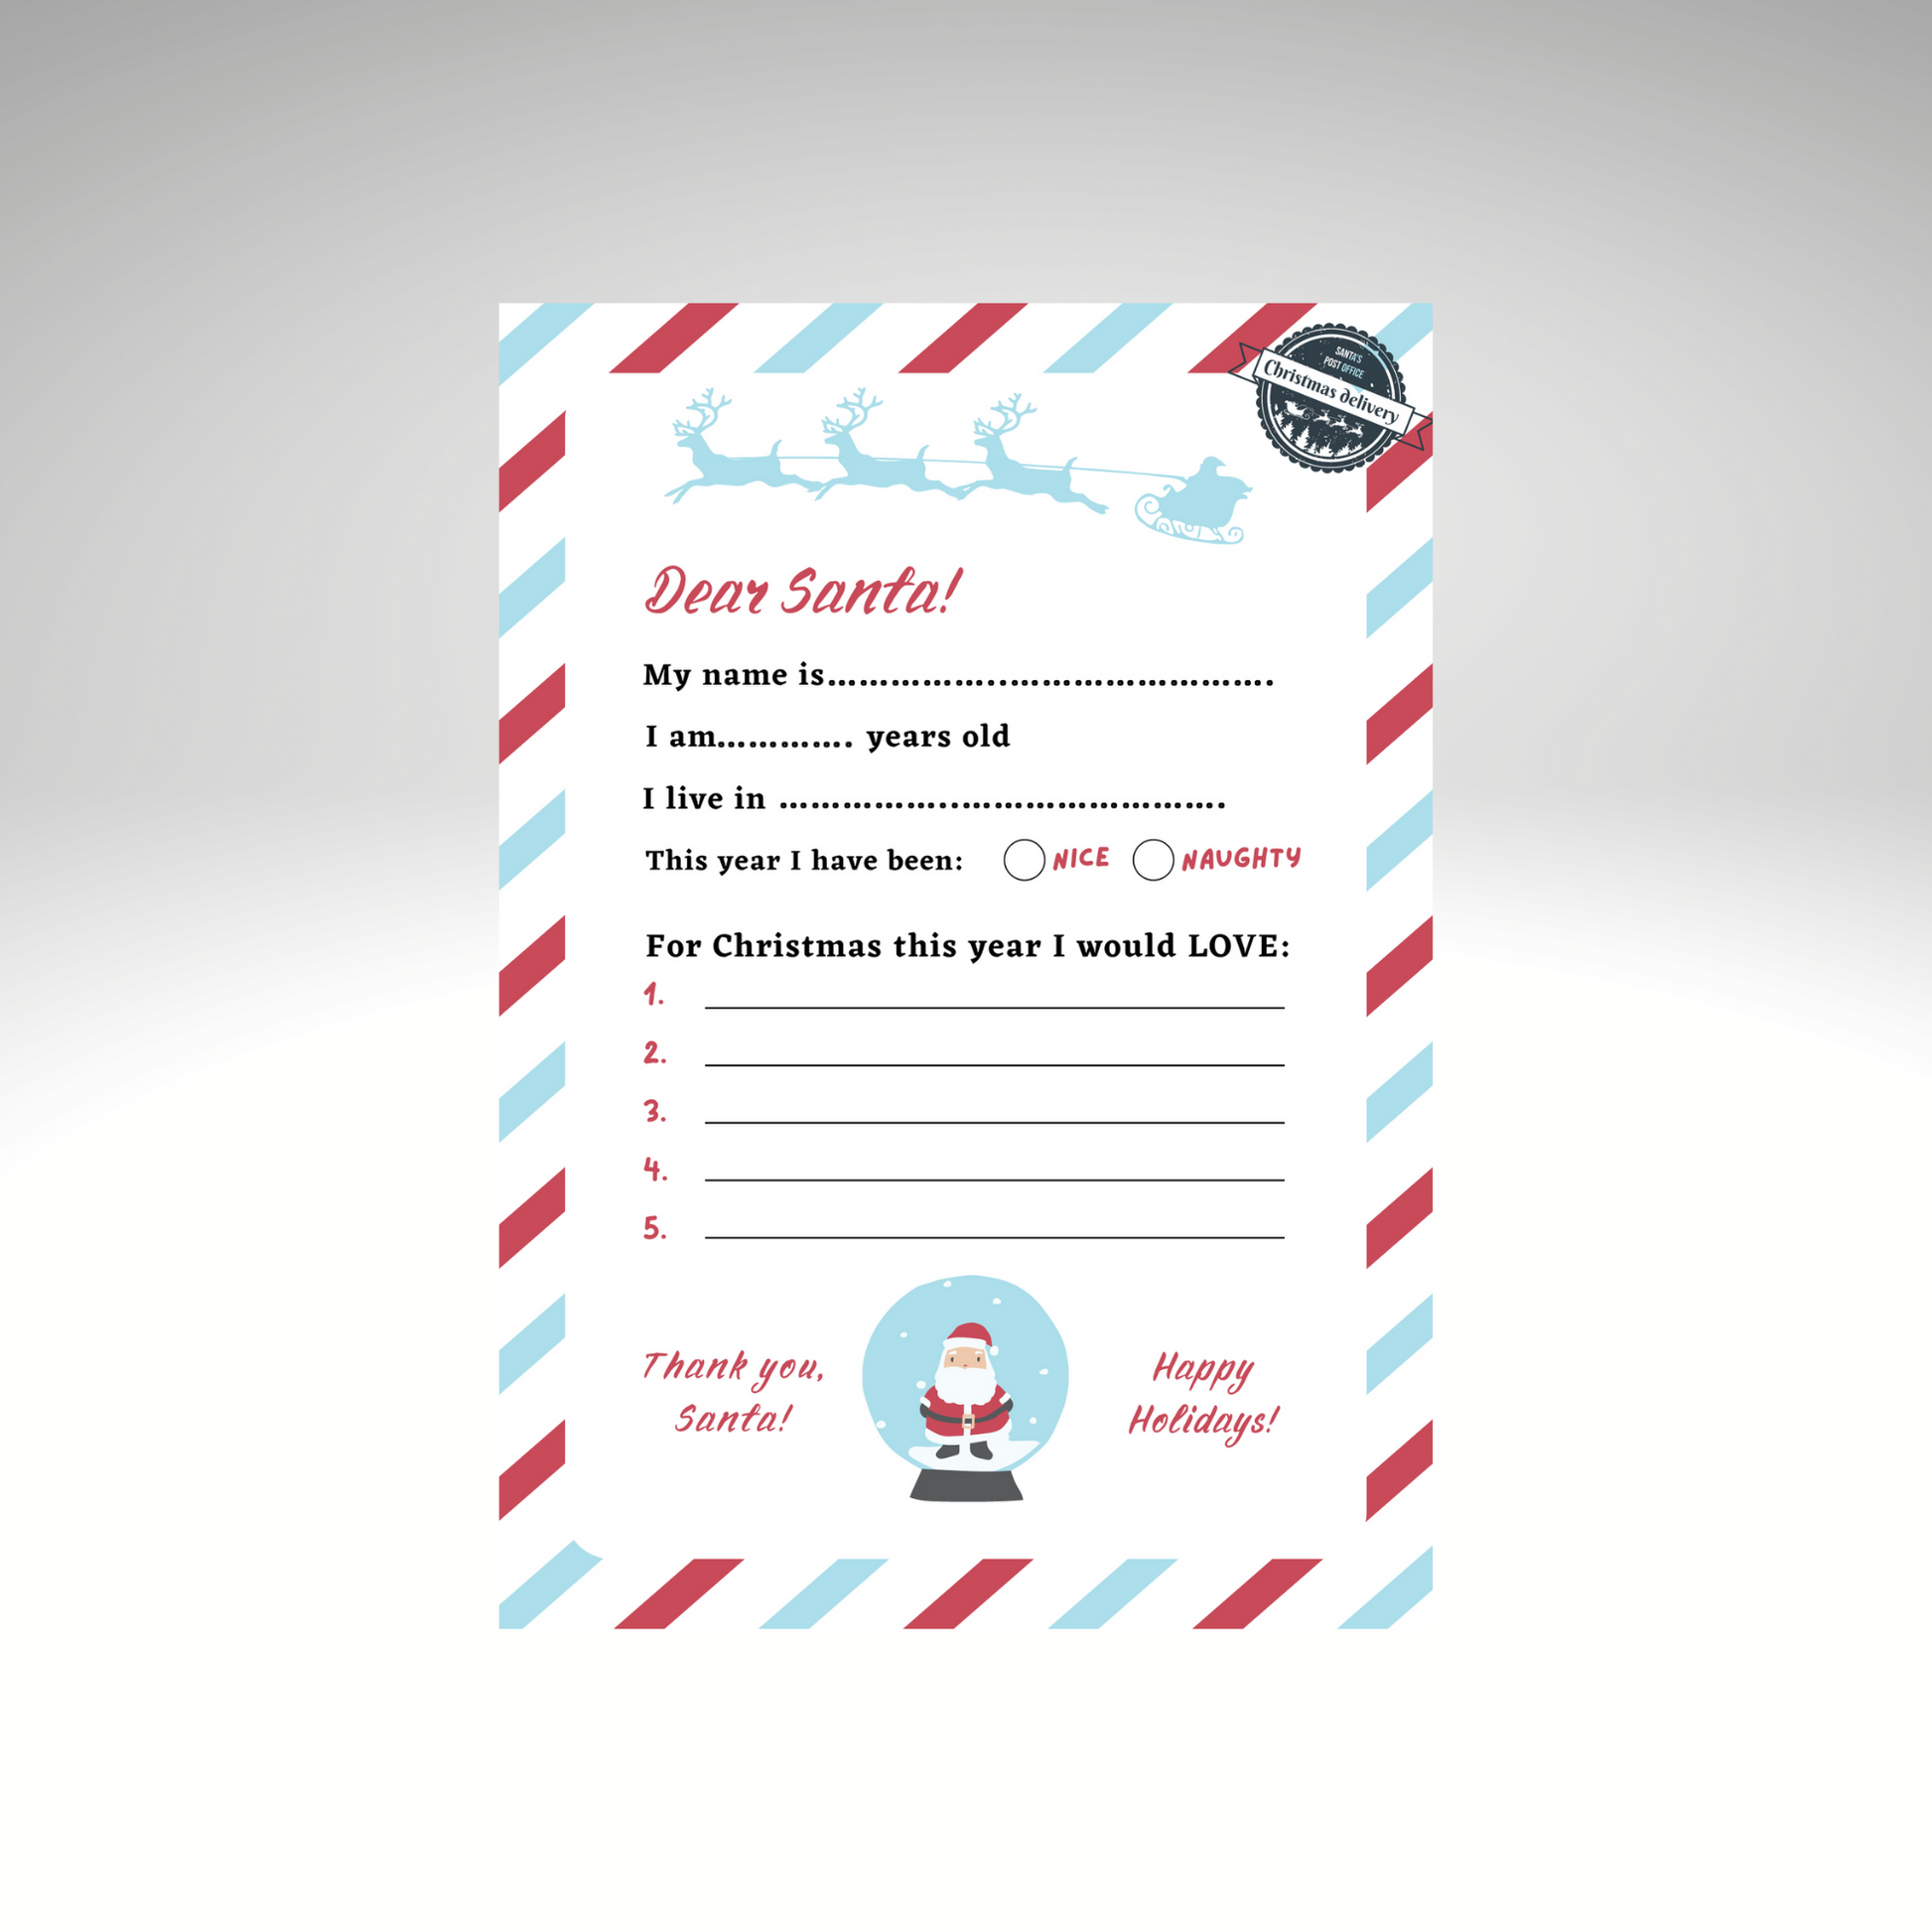 Dear Santa Letter Downloadable A5